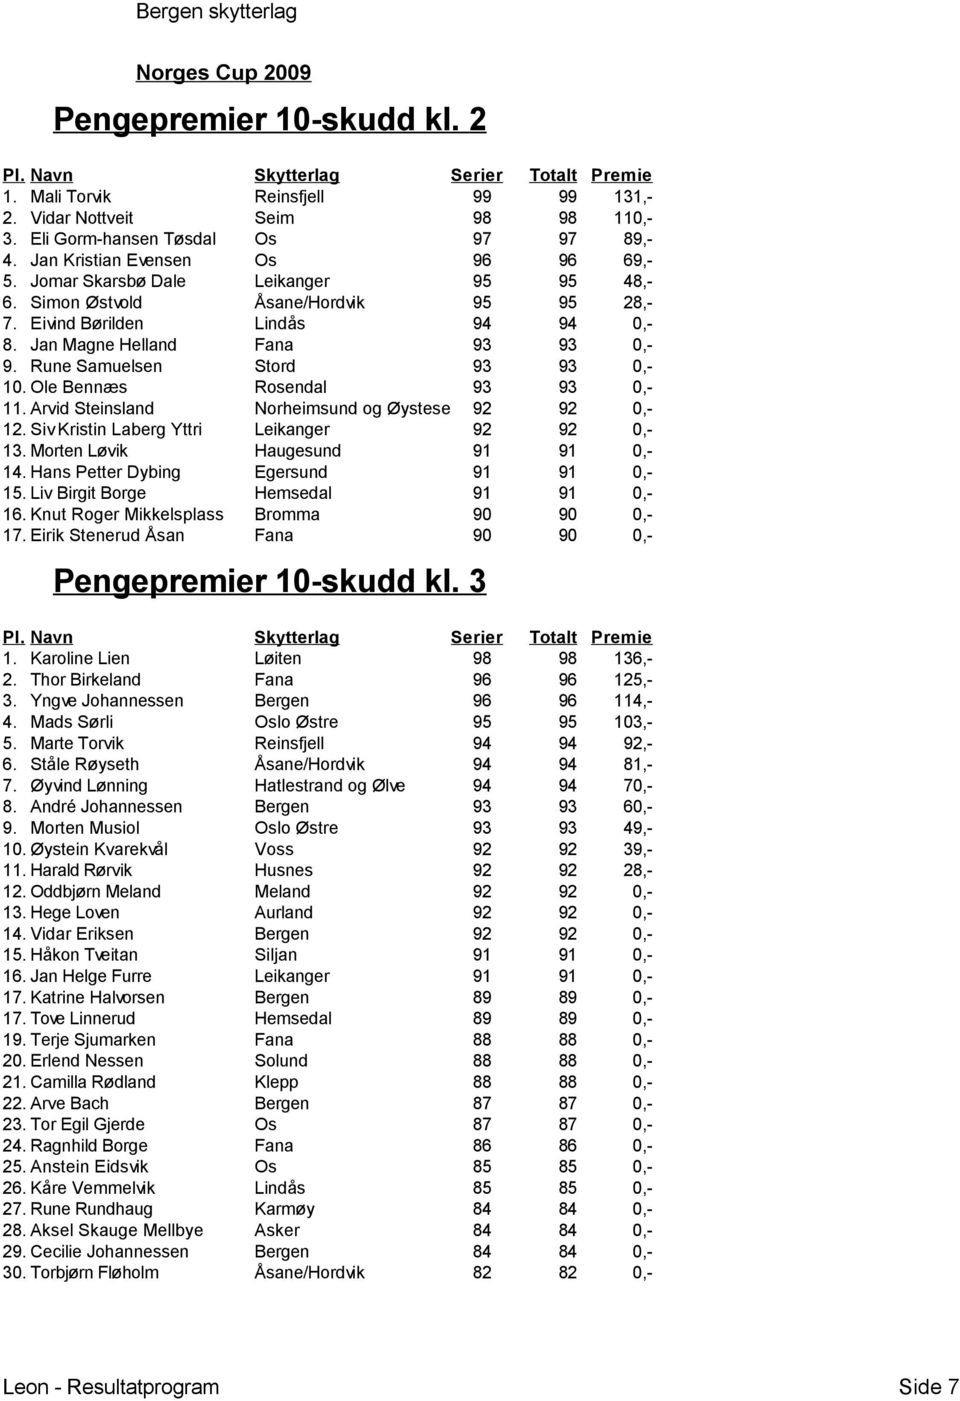 Ole Bennæs Rosendal 93 93 0,- 11. Arvid Steinsland Norheimsund og Øystese 92 92 0,- 12. Siv Kristin Laberg Yttri Leikanger 92 92 0,- 13. Morten Løvik Haugesund 91 91 0,- 14.